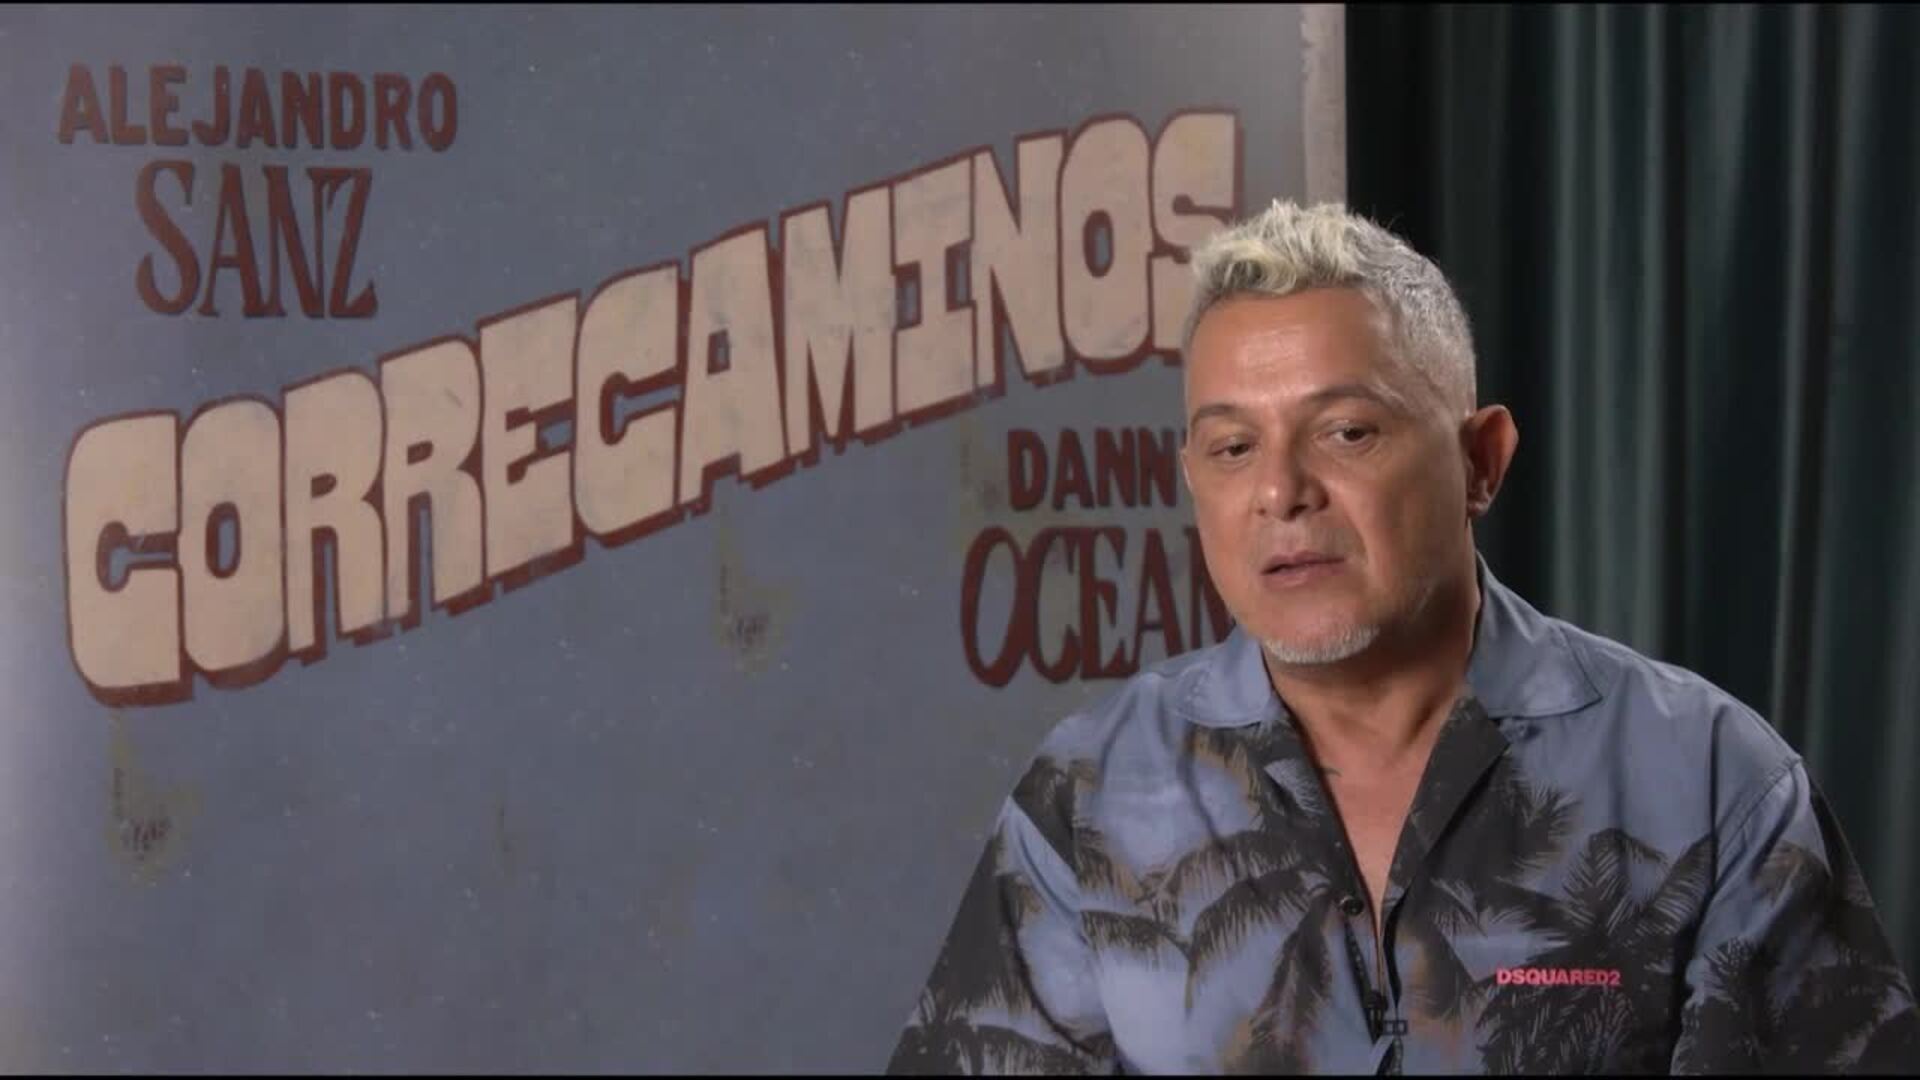 Alejandro Sanz estrena 'Correcaminos' junto a Danny Ocean